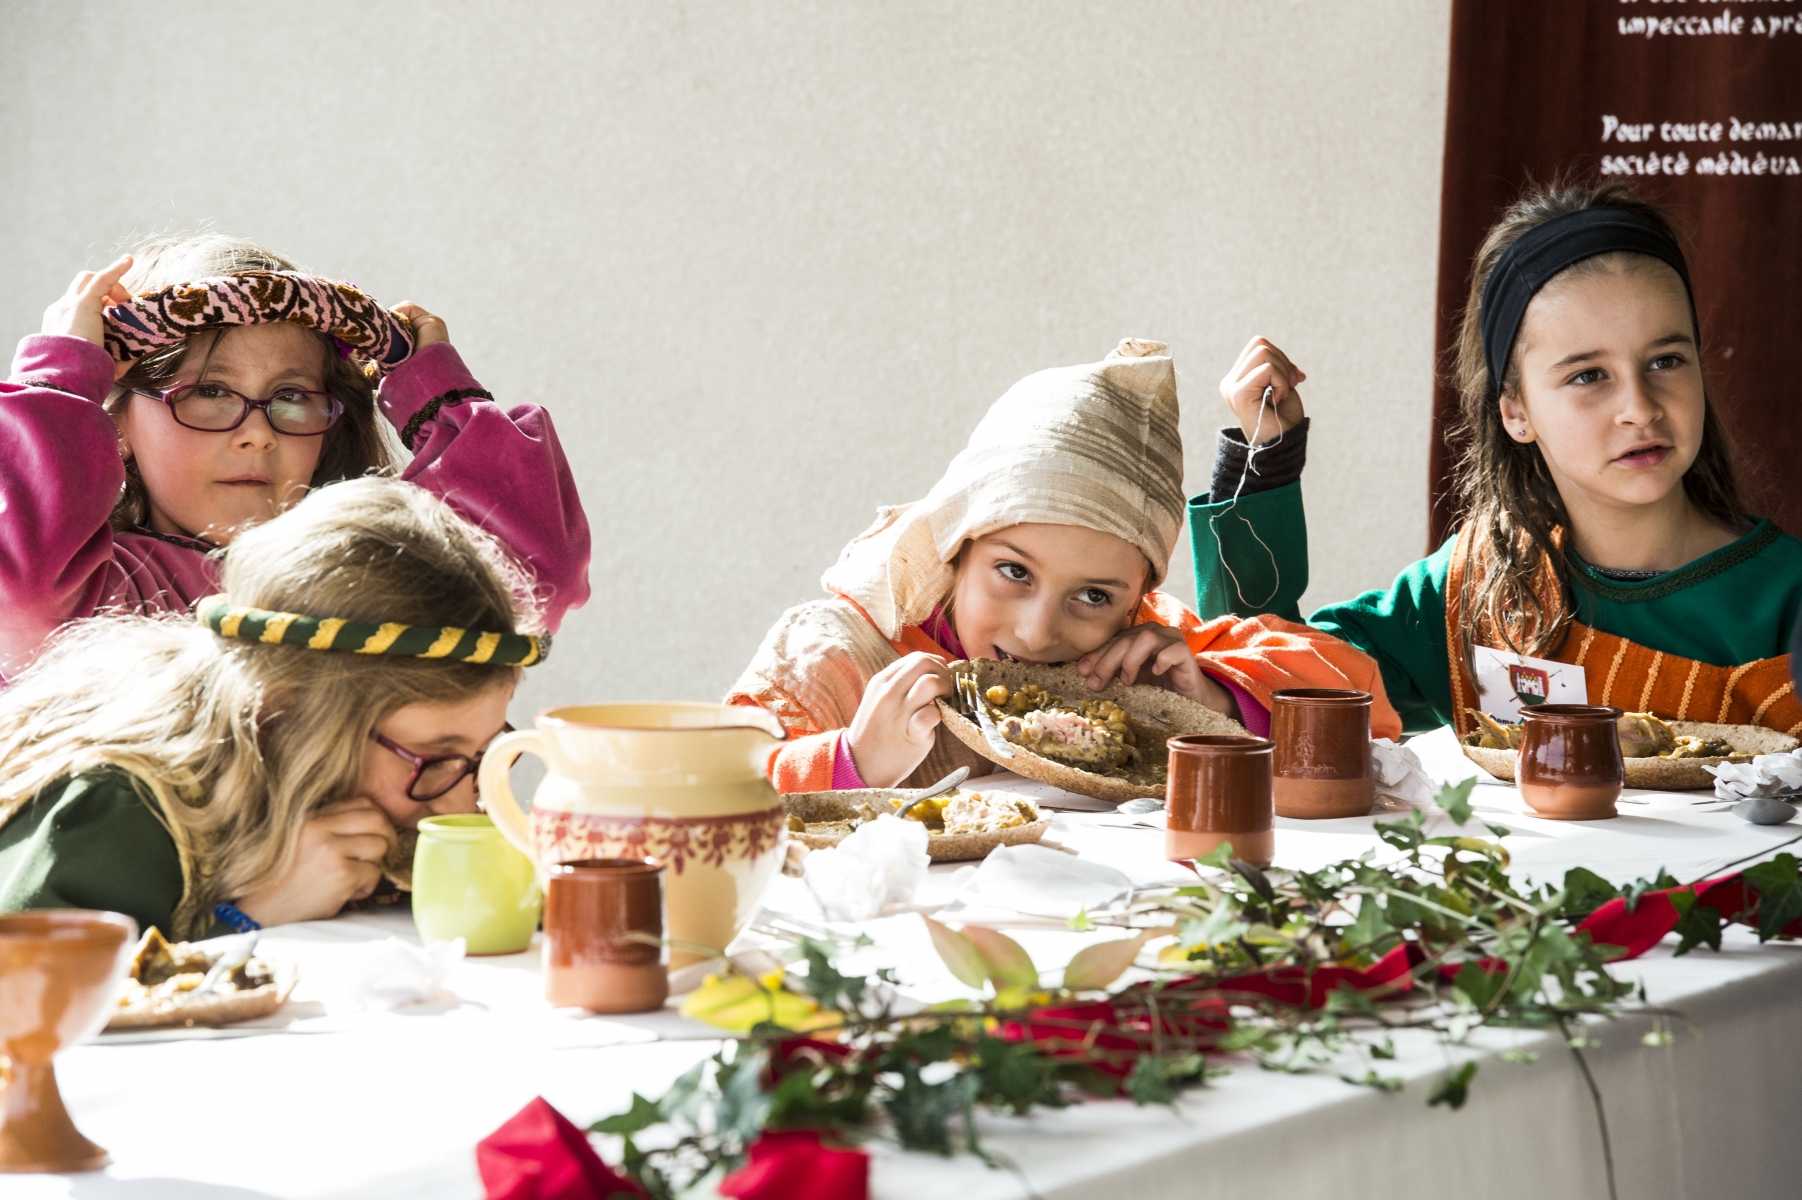 Lors du banquet médiéval, les enfants ont apprécié de pouvoir manger avec les doigts et ont beaucoup aimé l'assiette en pain.

Image d'illustration